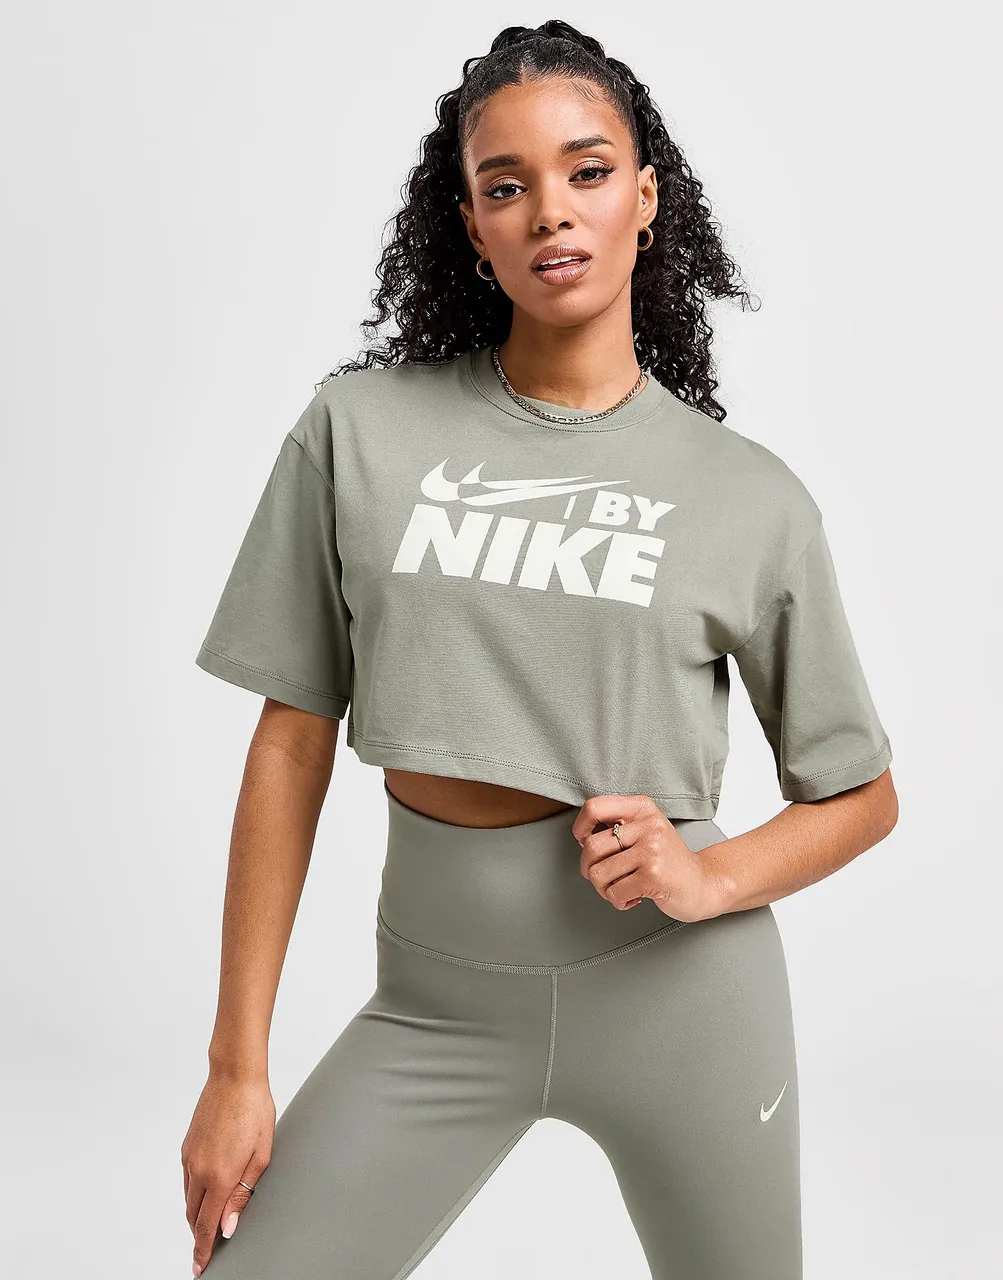 Nike Swoosh Crop T-Shirt - Brown - Womens